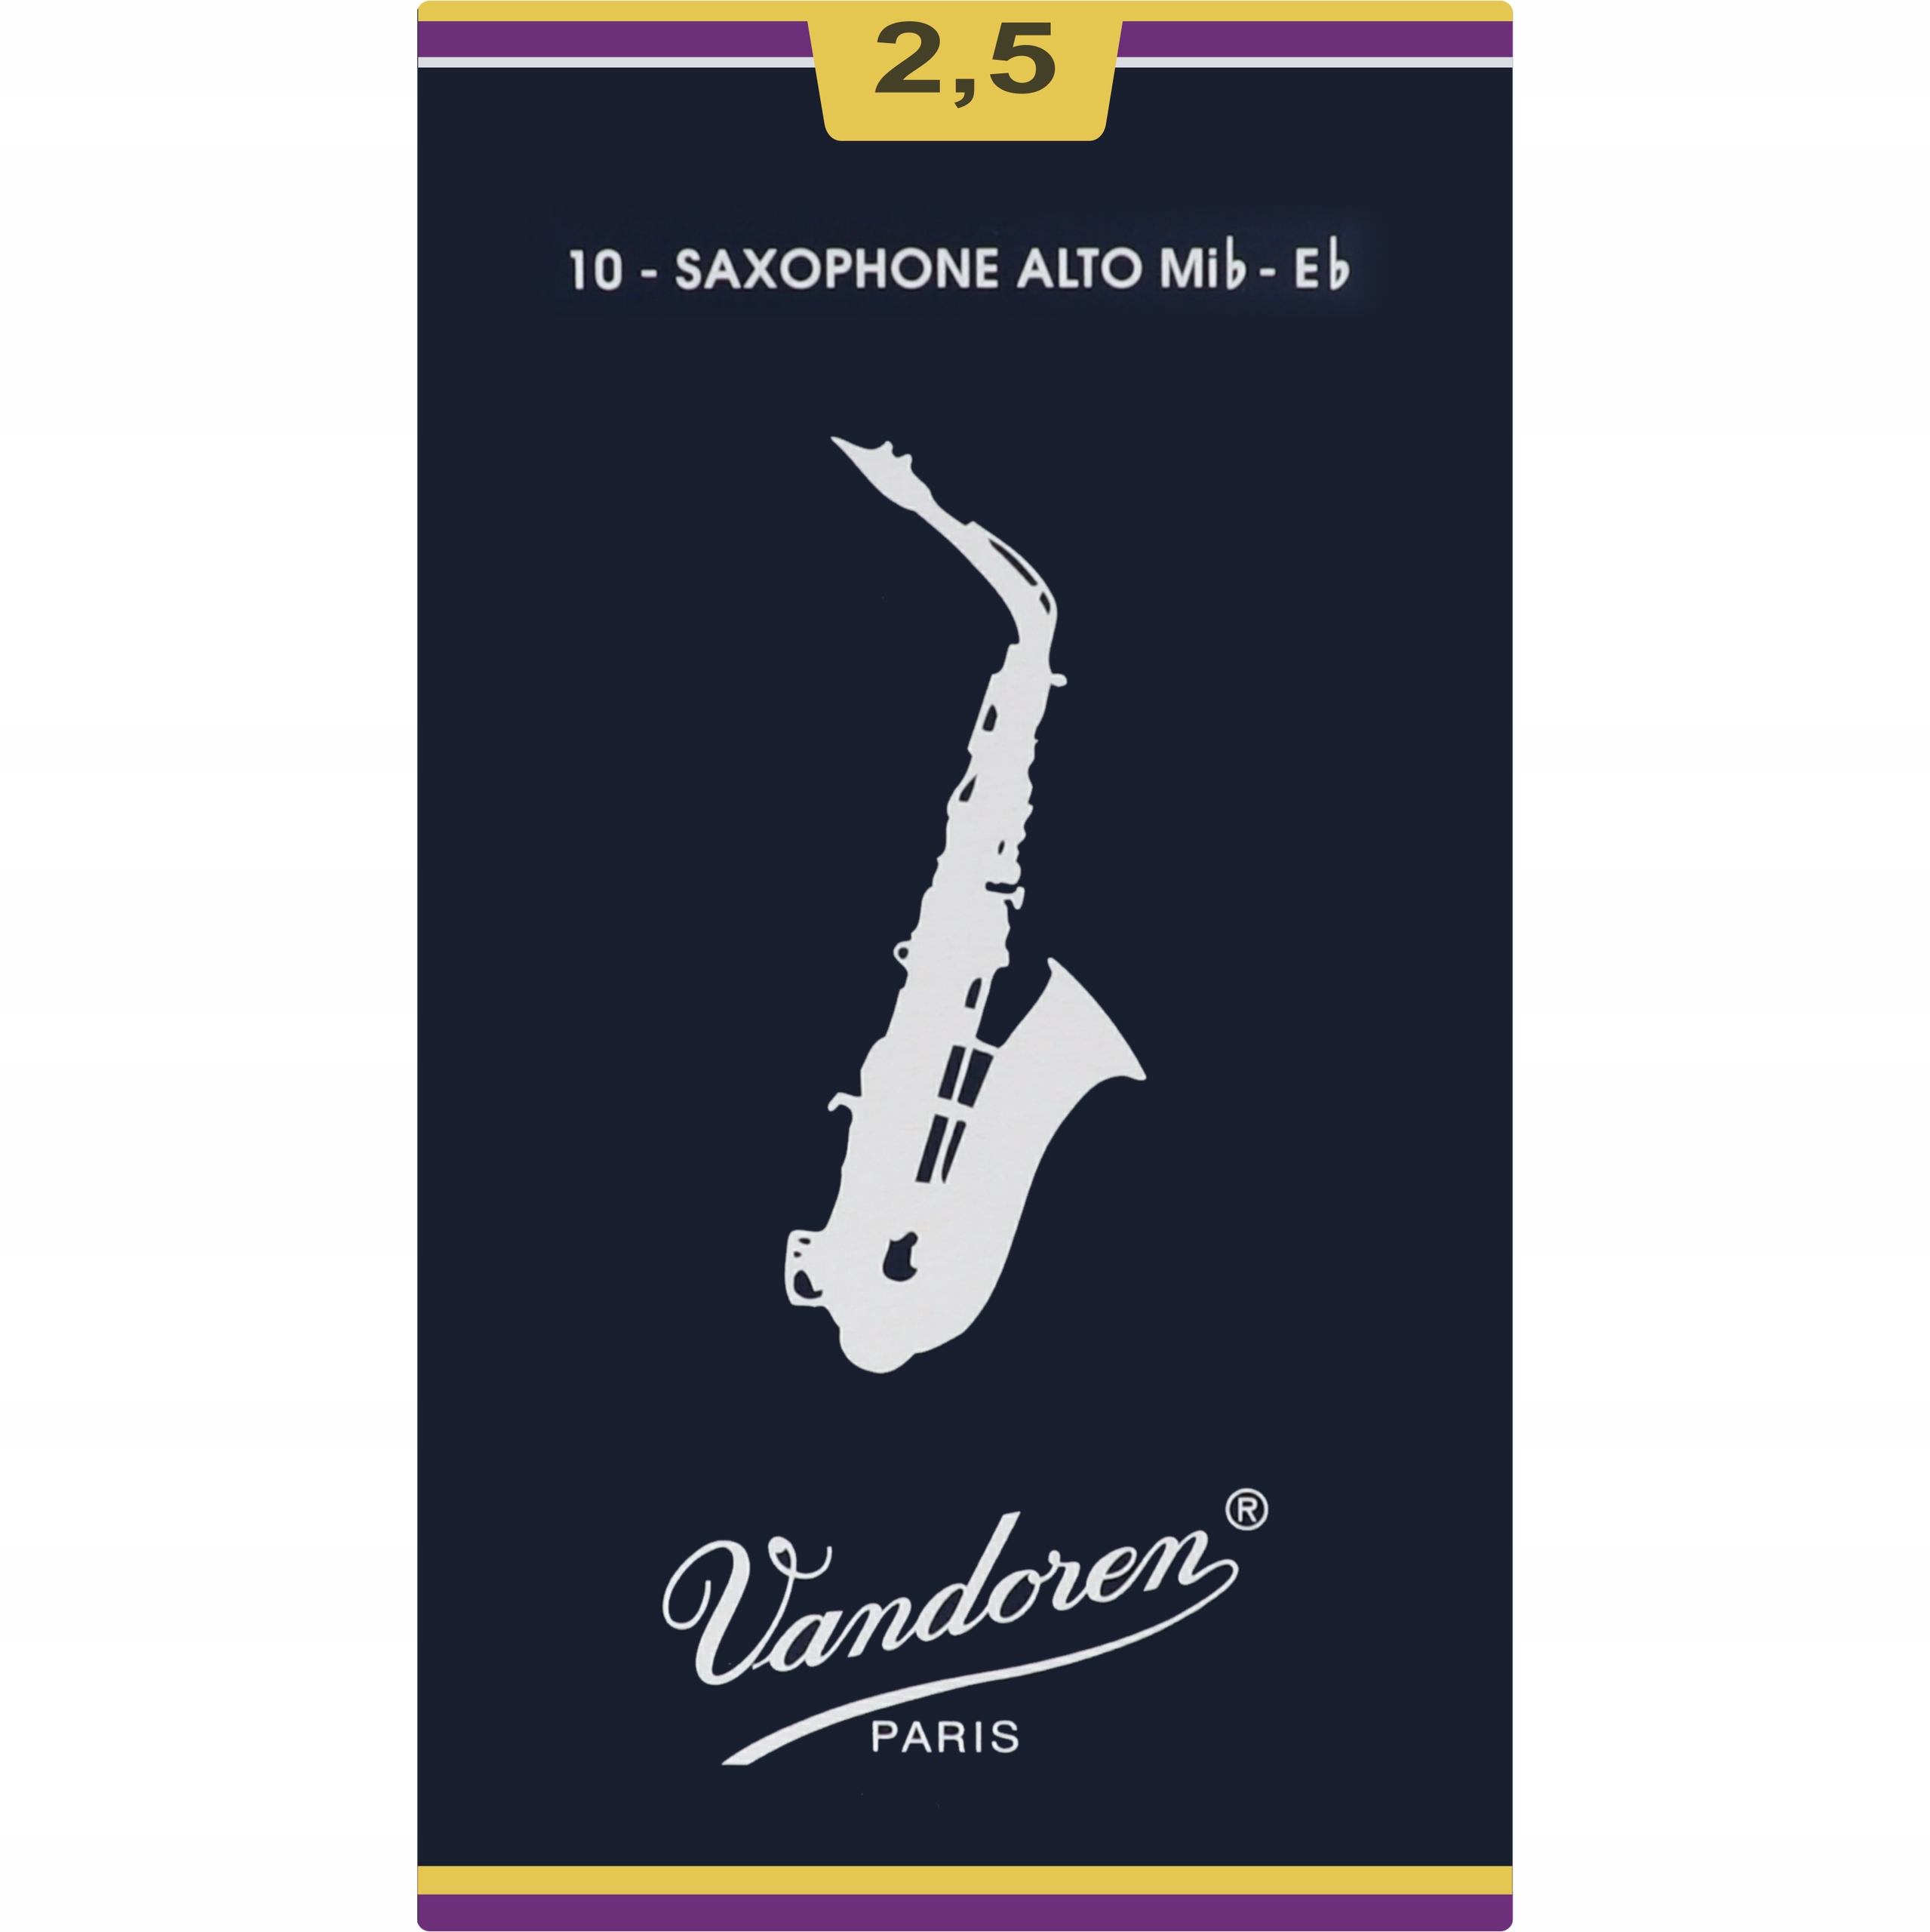 Купить трости для саксофона альт. Трость Вандорен 3 для саксофона Альт. Трости Vandoren 2,5 Альт саксофон. Трости для саксофона Альт Vandoren. Трости для саксофона Альт Vandoren 2.